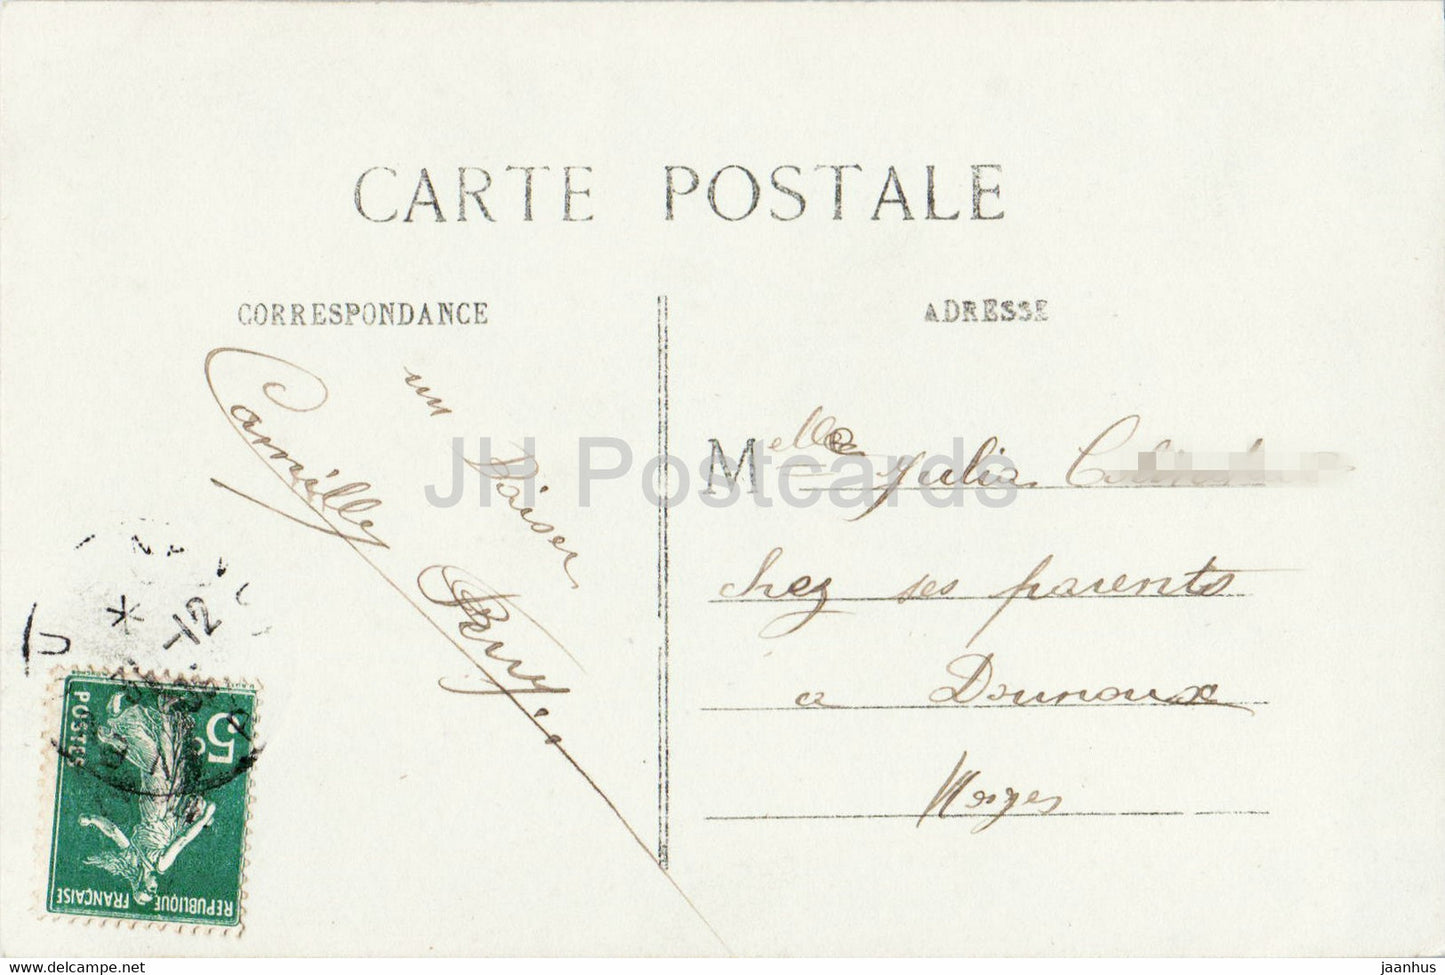 Neujahrsgrußkarte – Bonne Annee – Meilleurs Voeux – Mann – 839 – OTO – alte Postkarte – Frankreich – gebraucht